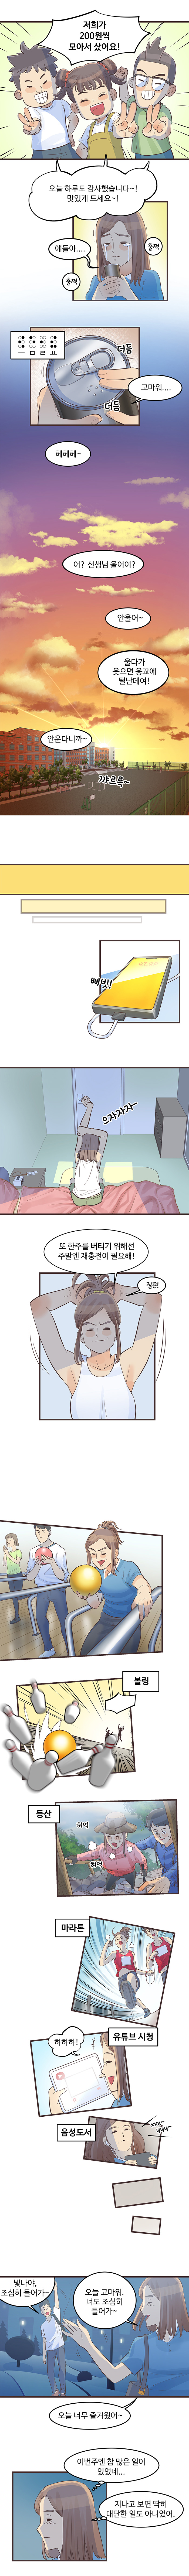 중증시각장애인 김빛나 웹툰 7화. 원고는 하단을 참조하세요.